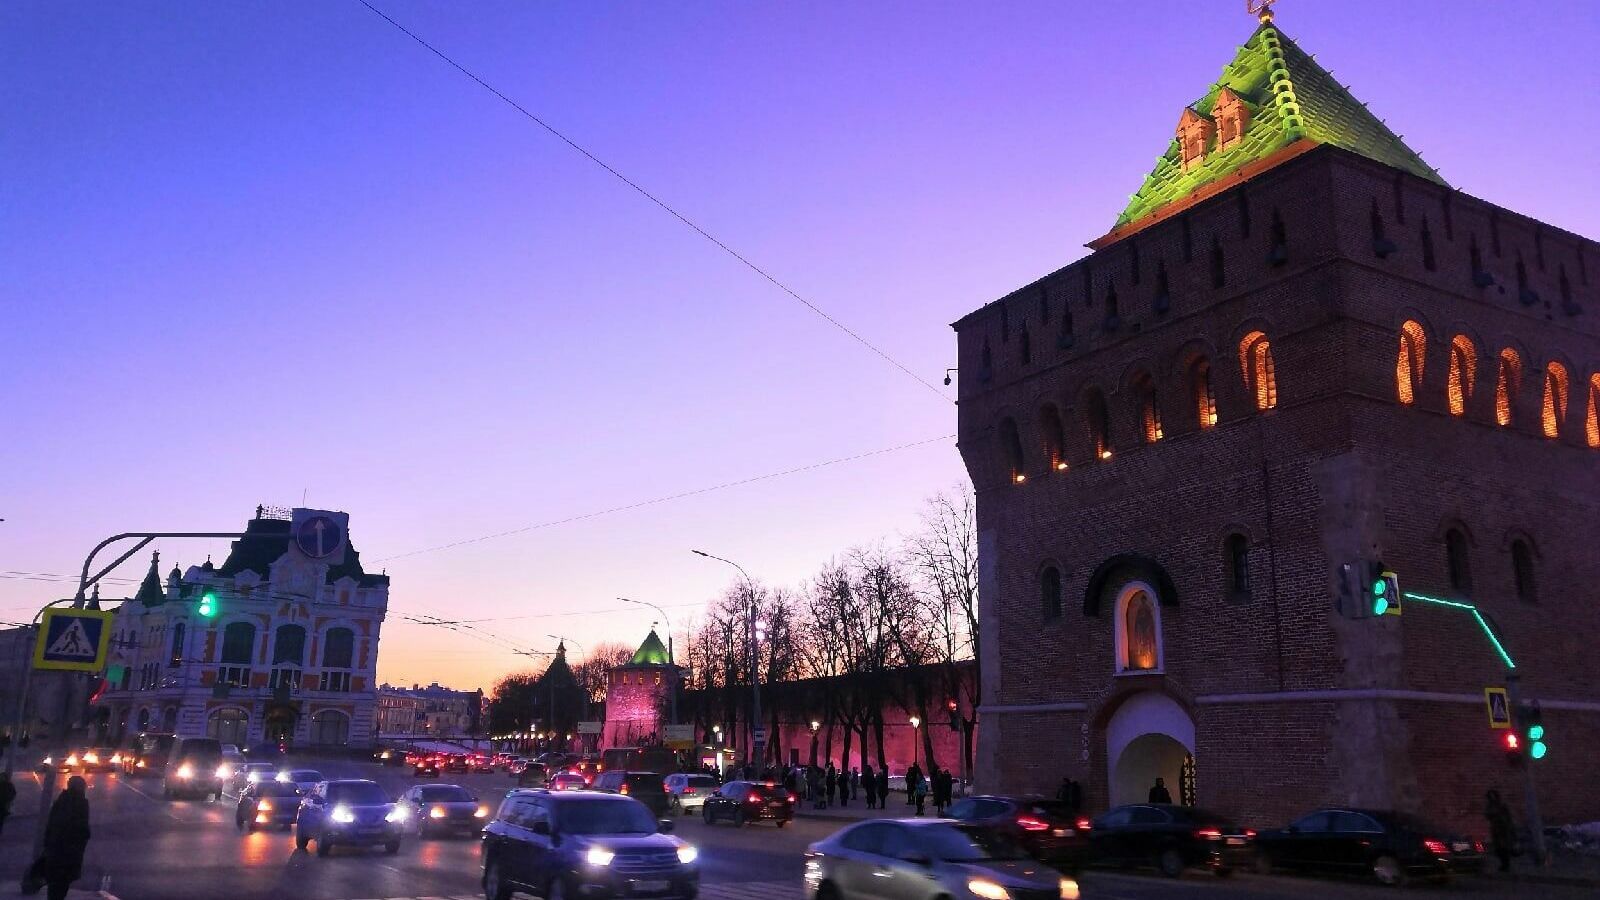 Нижний Новгород занял 15 место среди городов-миллионников по приросту населения